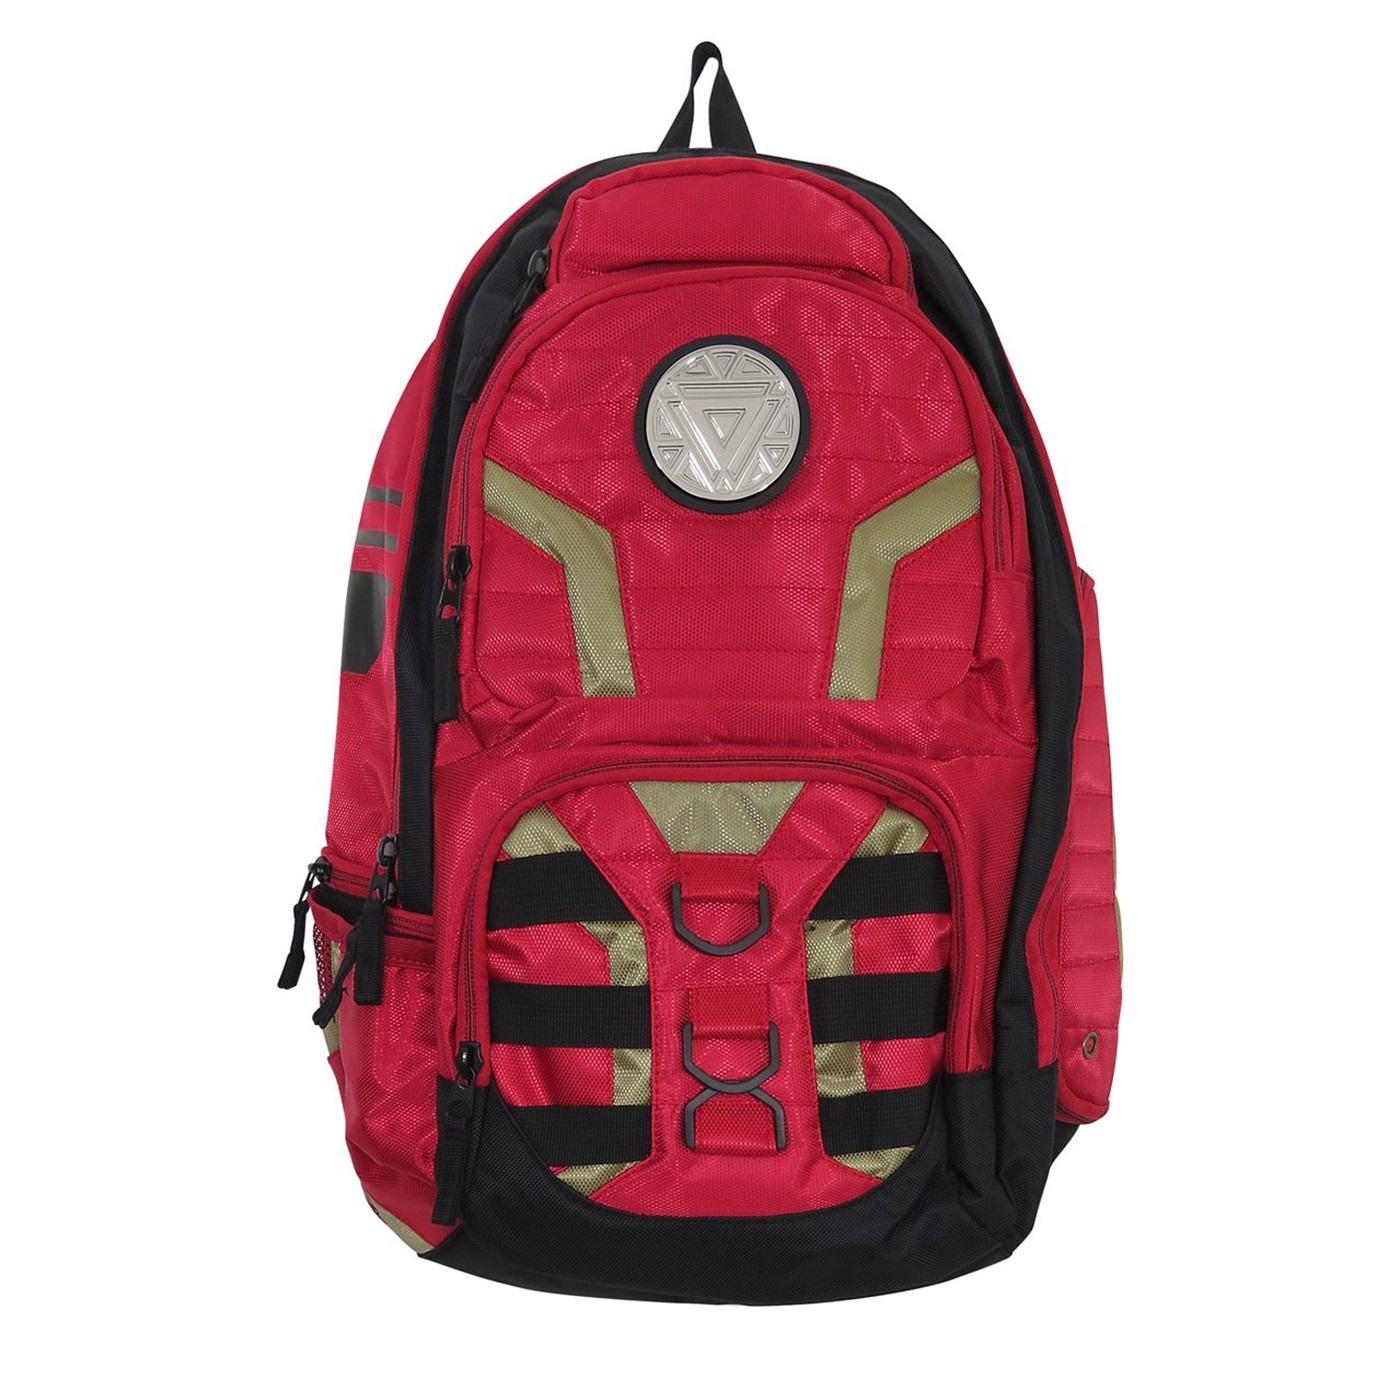 Iron Man Better Built Backpack